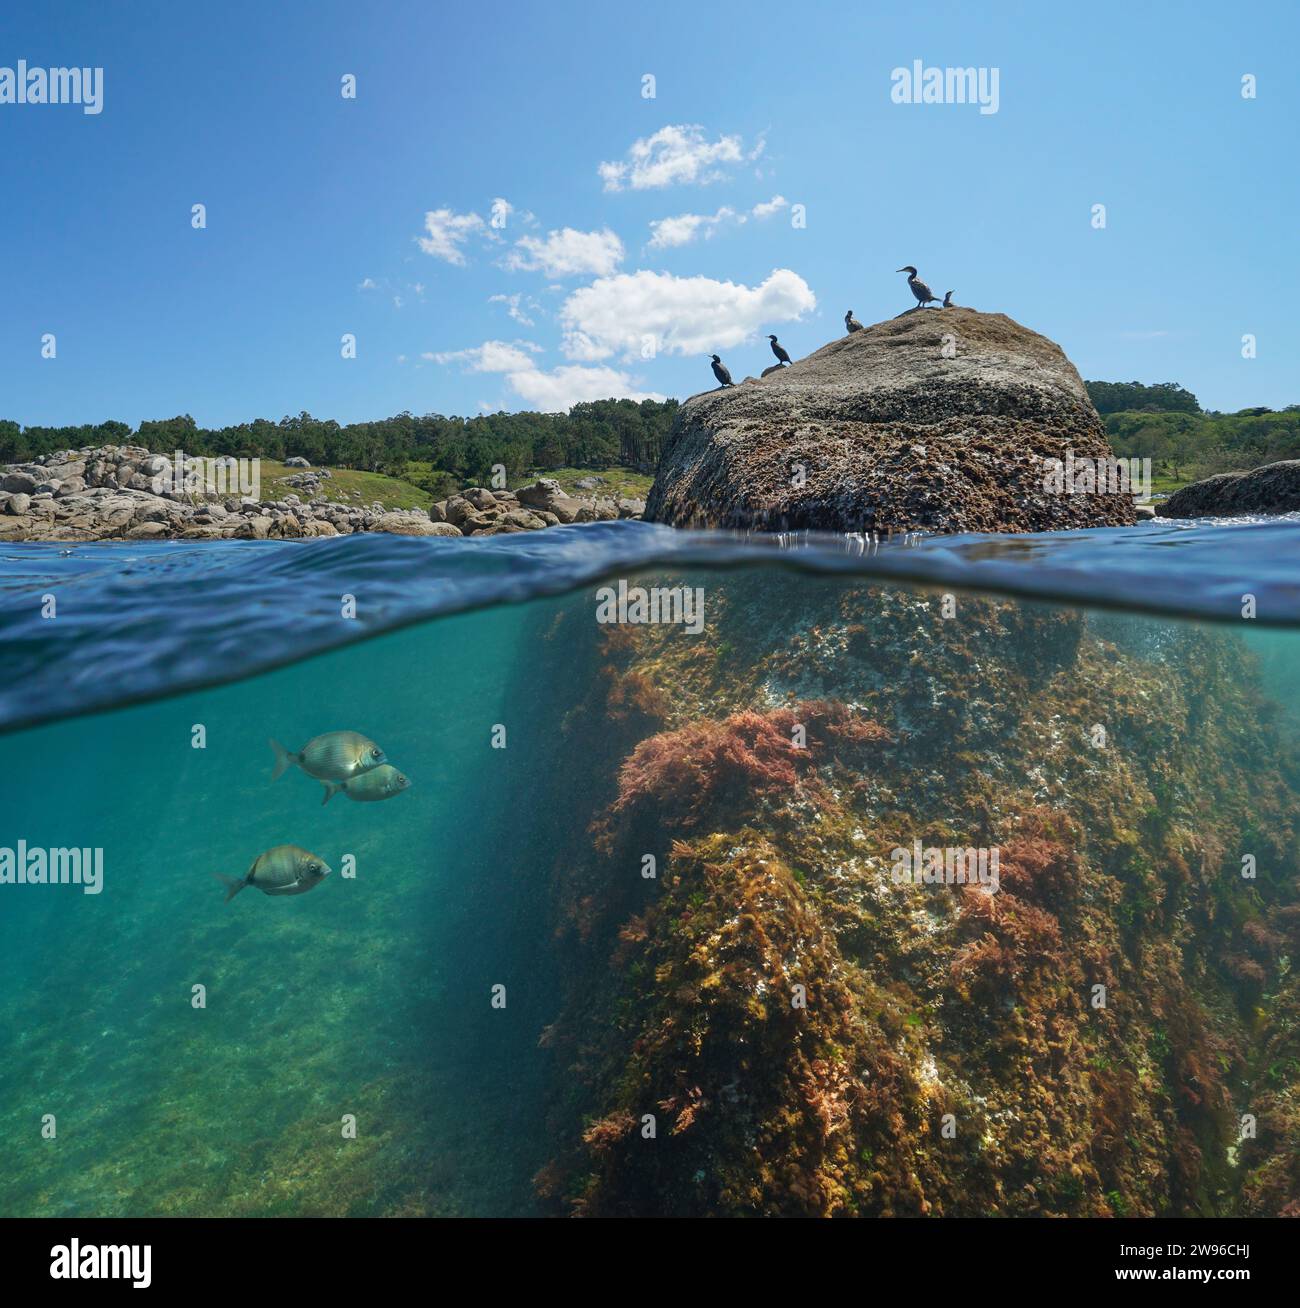 Atlantik Meereslandschaft, Küste mit Kormoranvögeln auf einem Felsen und Fisch unter Wasser, geteilter Blick halb über die Wasseroberfläche, natürliche Szene, Spanien Stockfoto